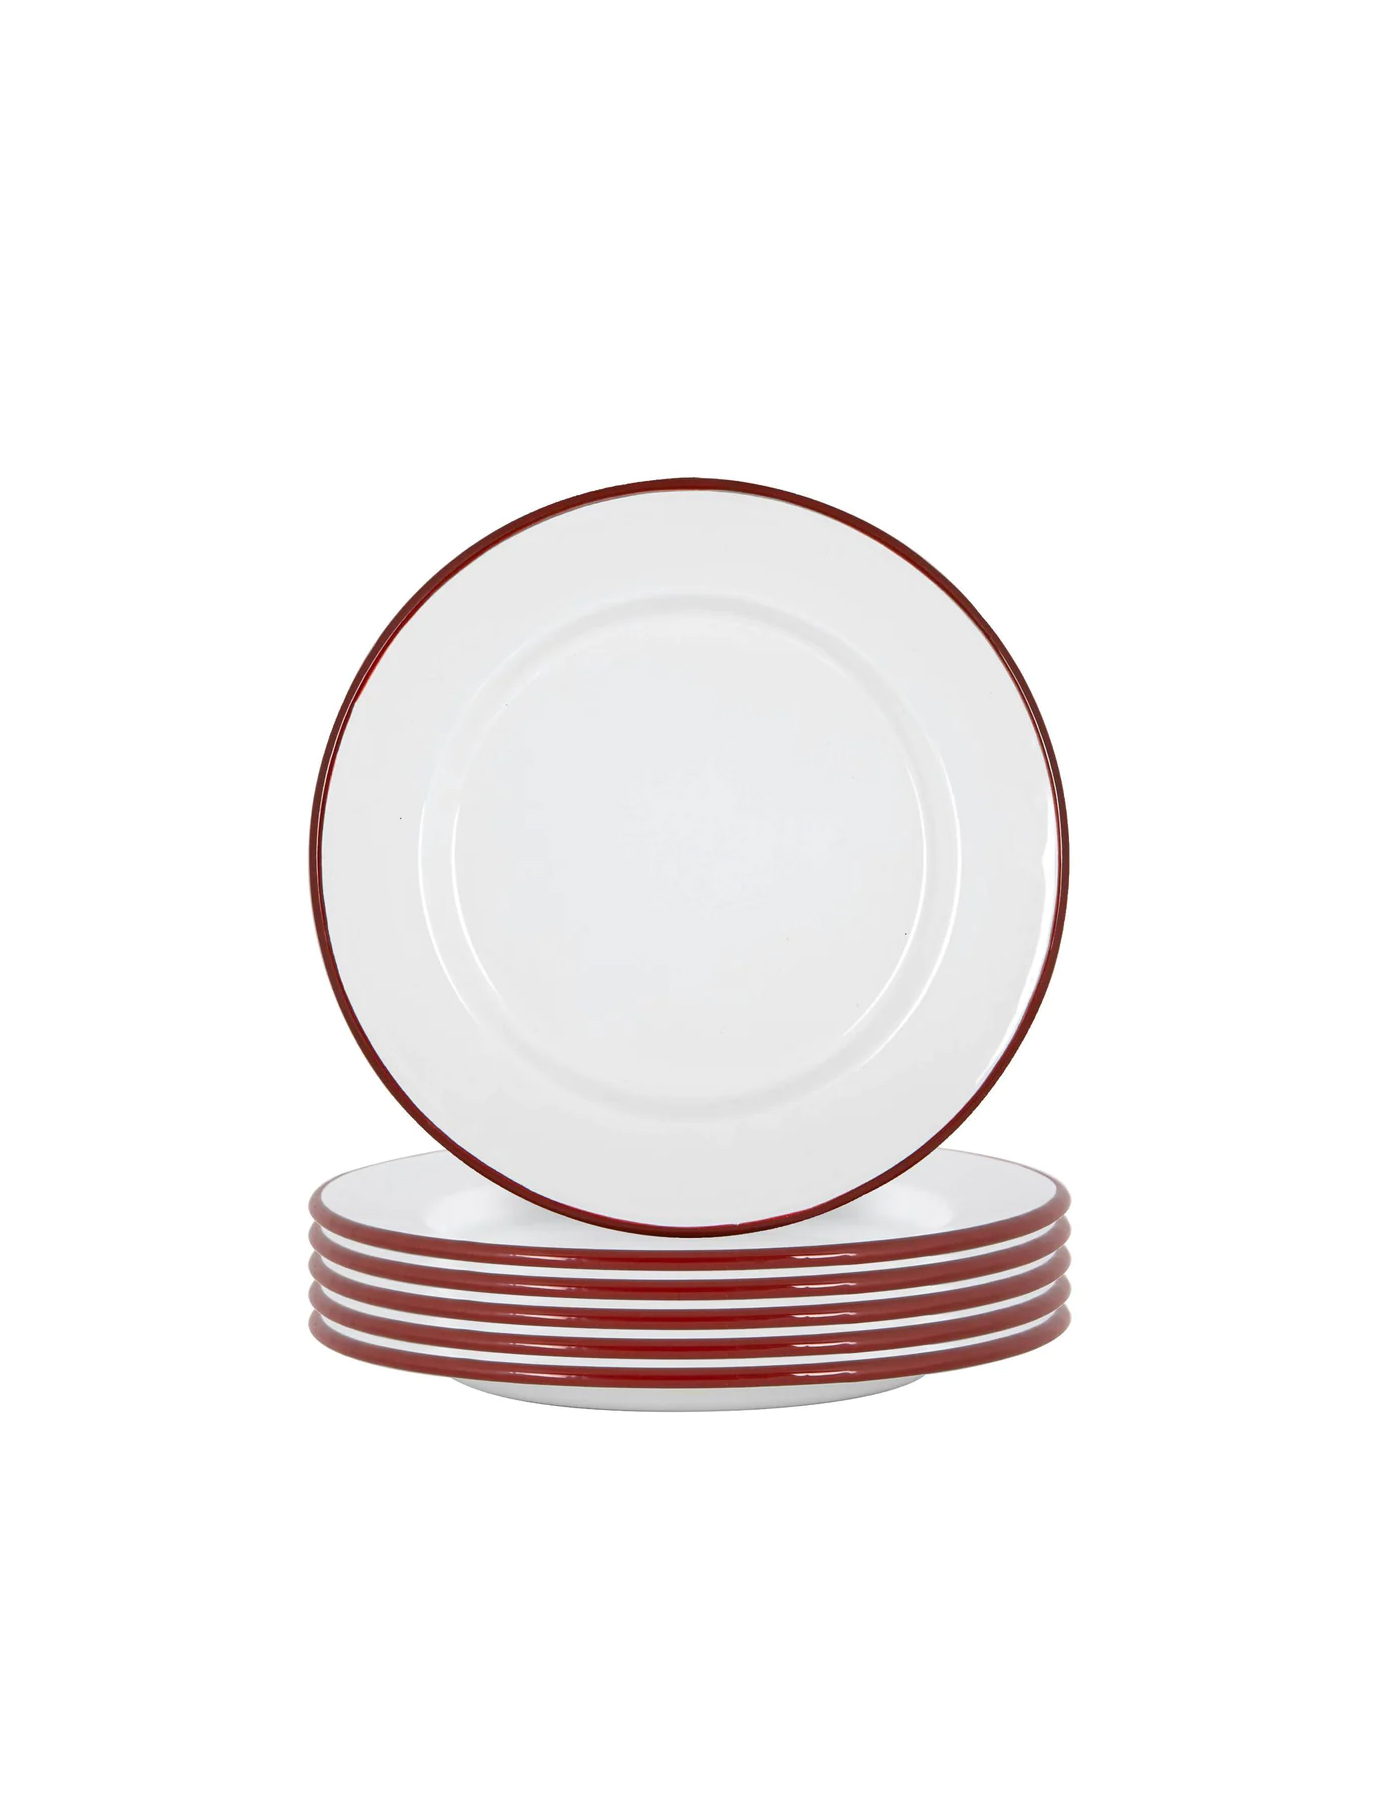 Set of 6 Burgundy Red Rimmed Enamel Dinner Plates, 25cm